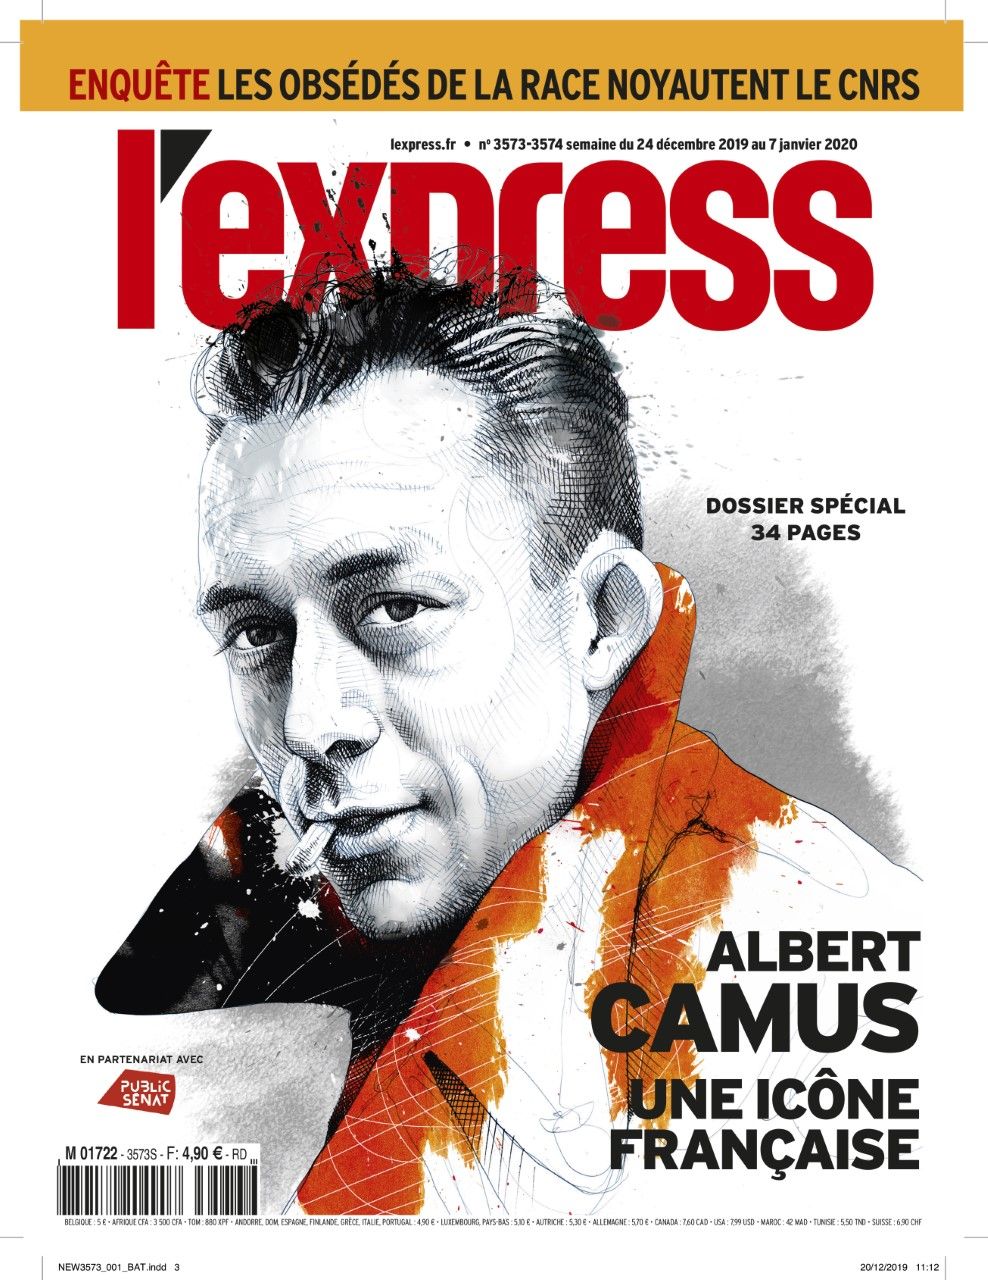 Il y a 60 ans, Albert Camus perdait la vie dans un accident dans l